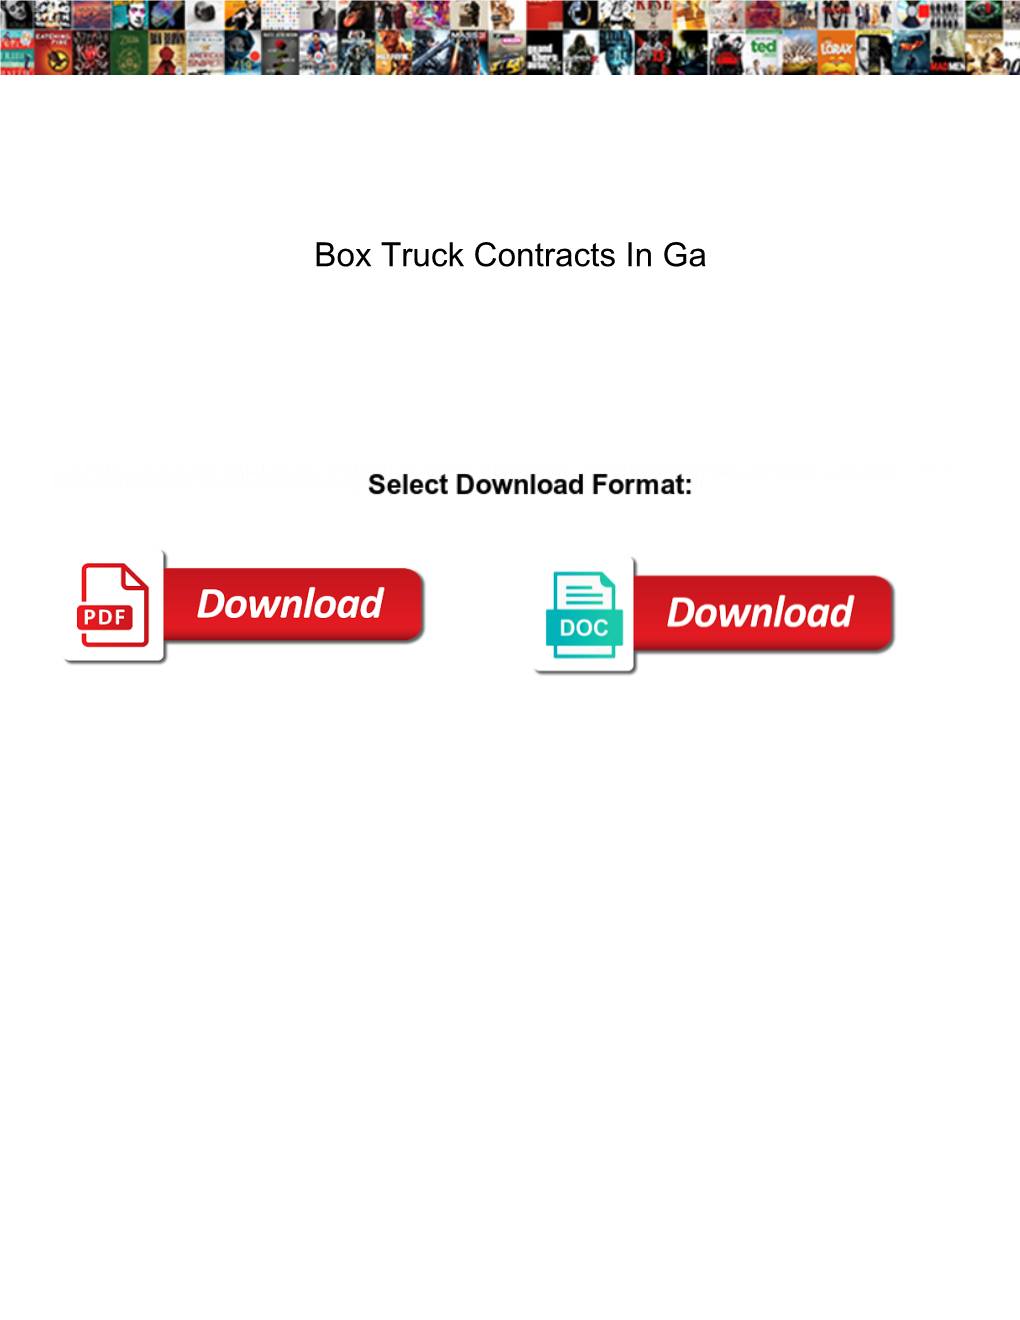 Box Truck Contracts in Ga